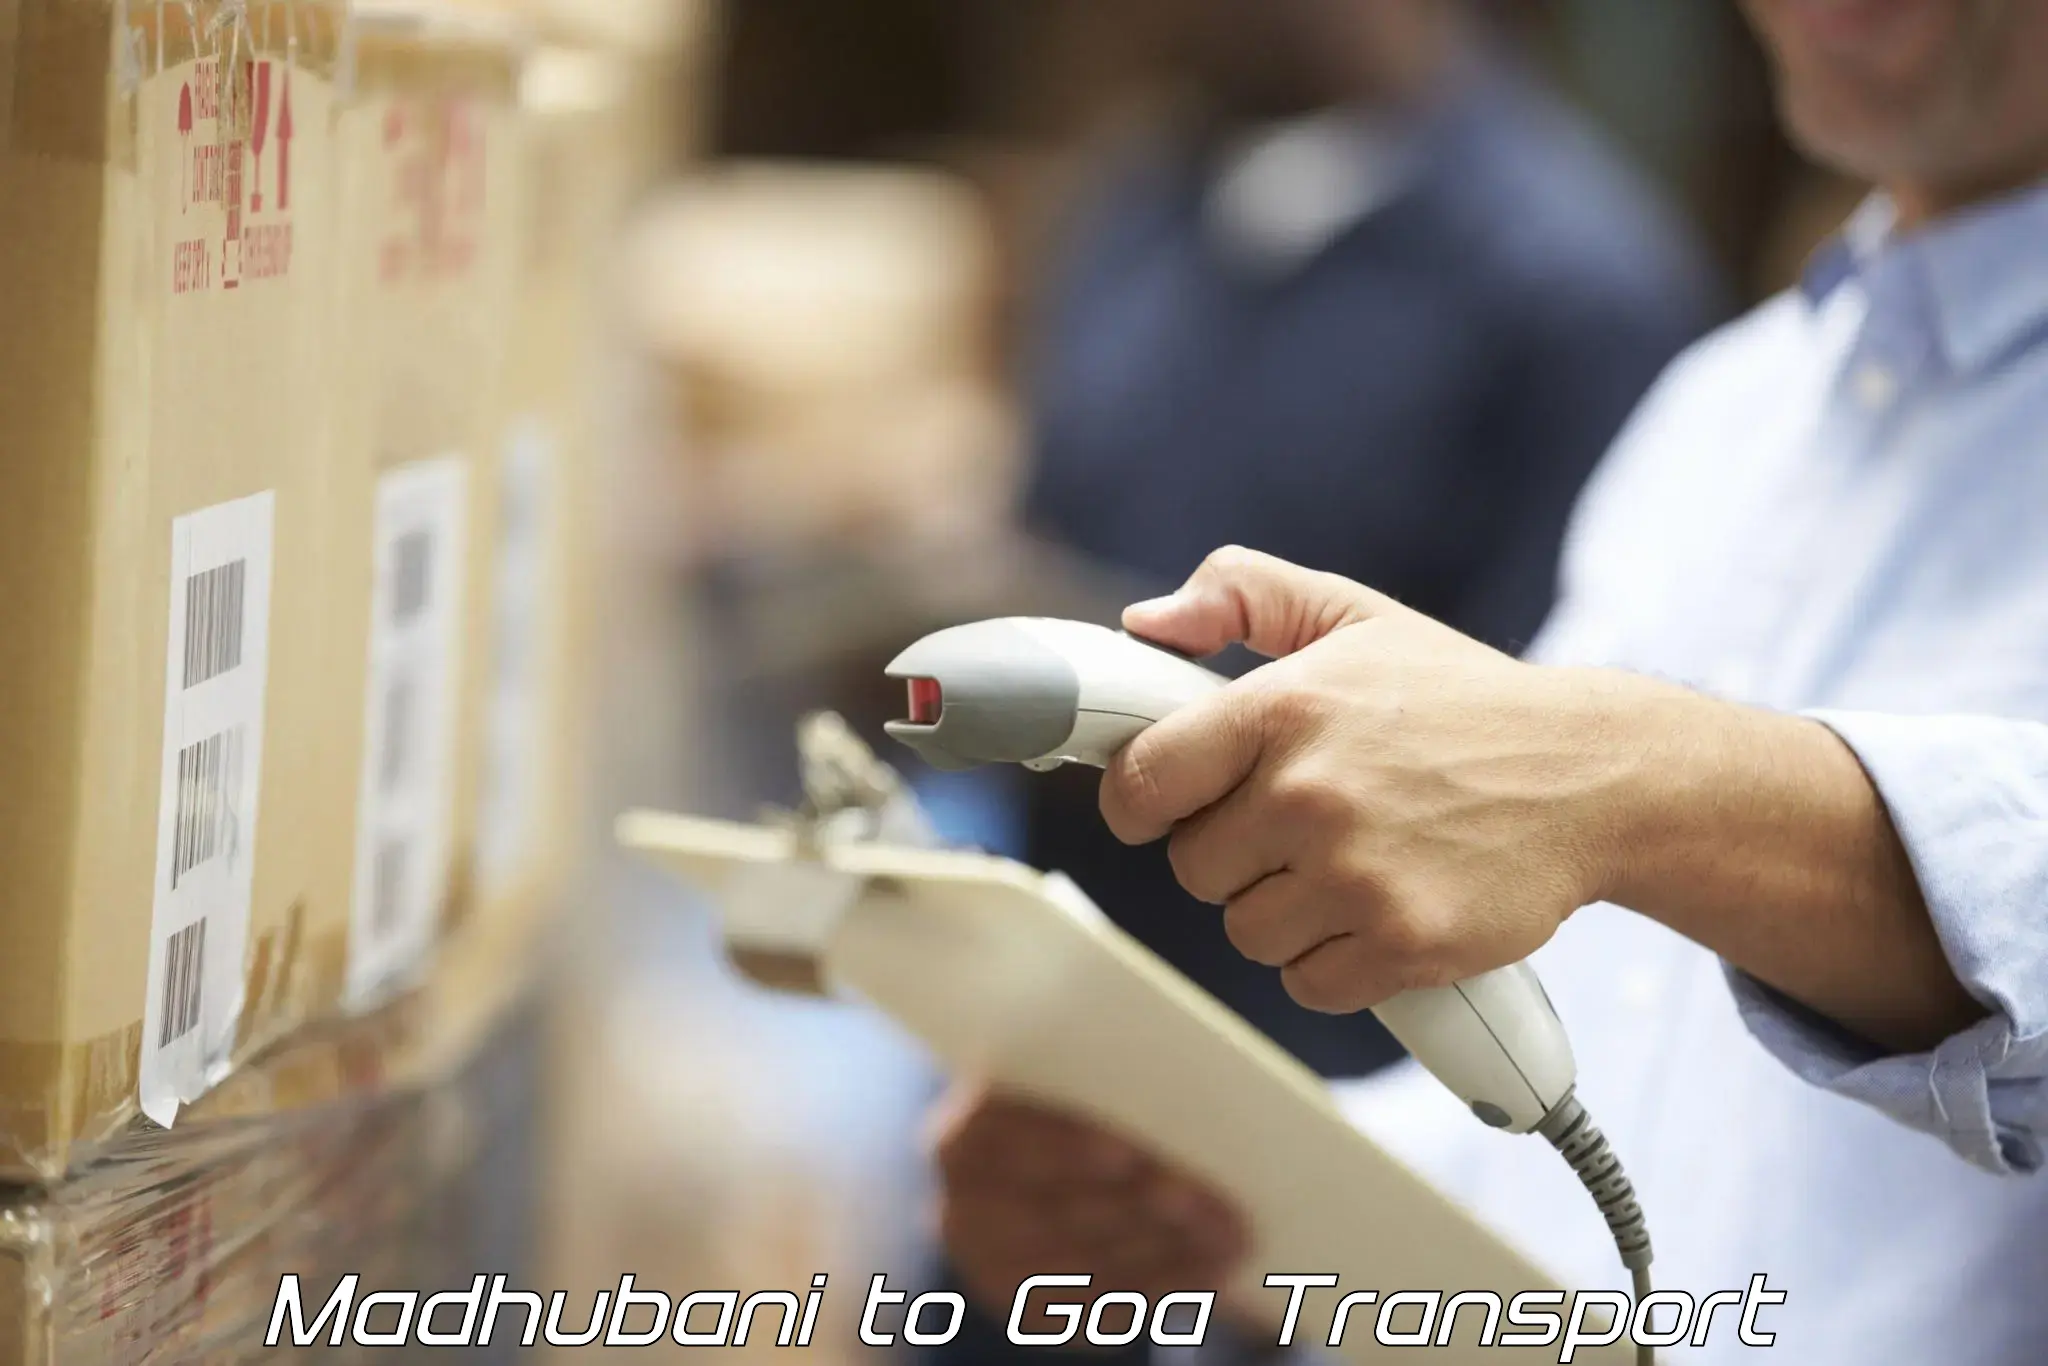 Transport services Madhubani to IIT Goa